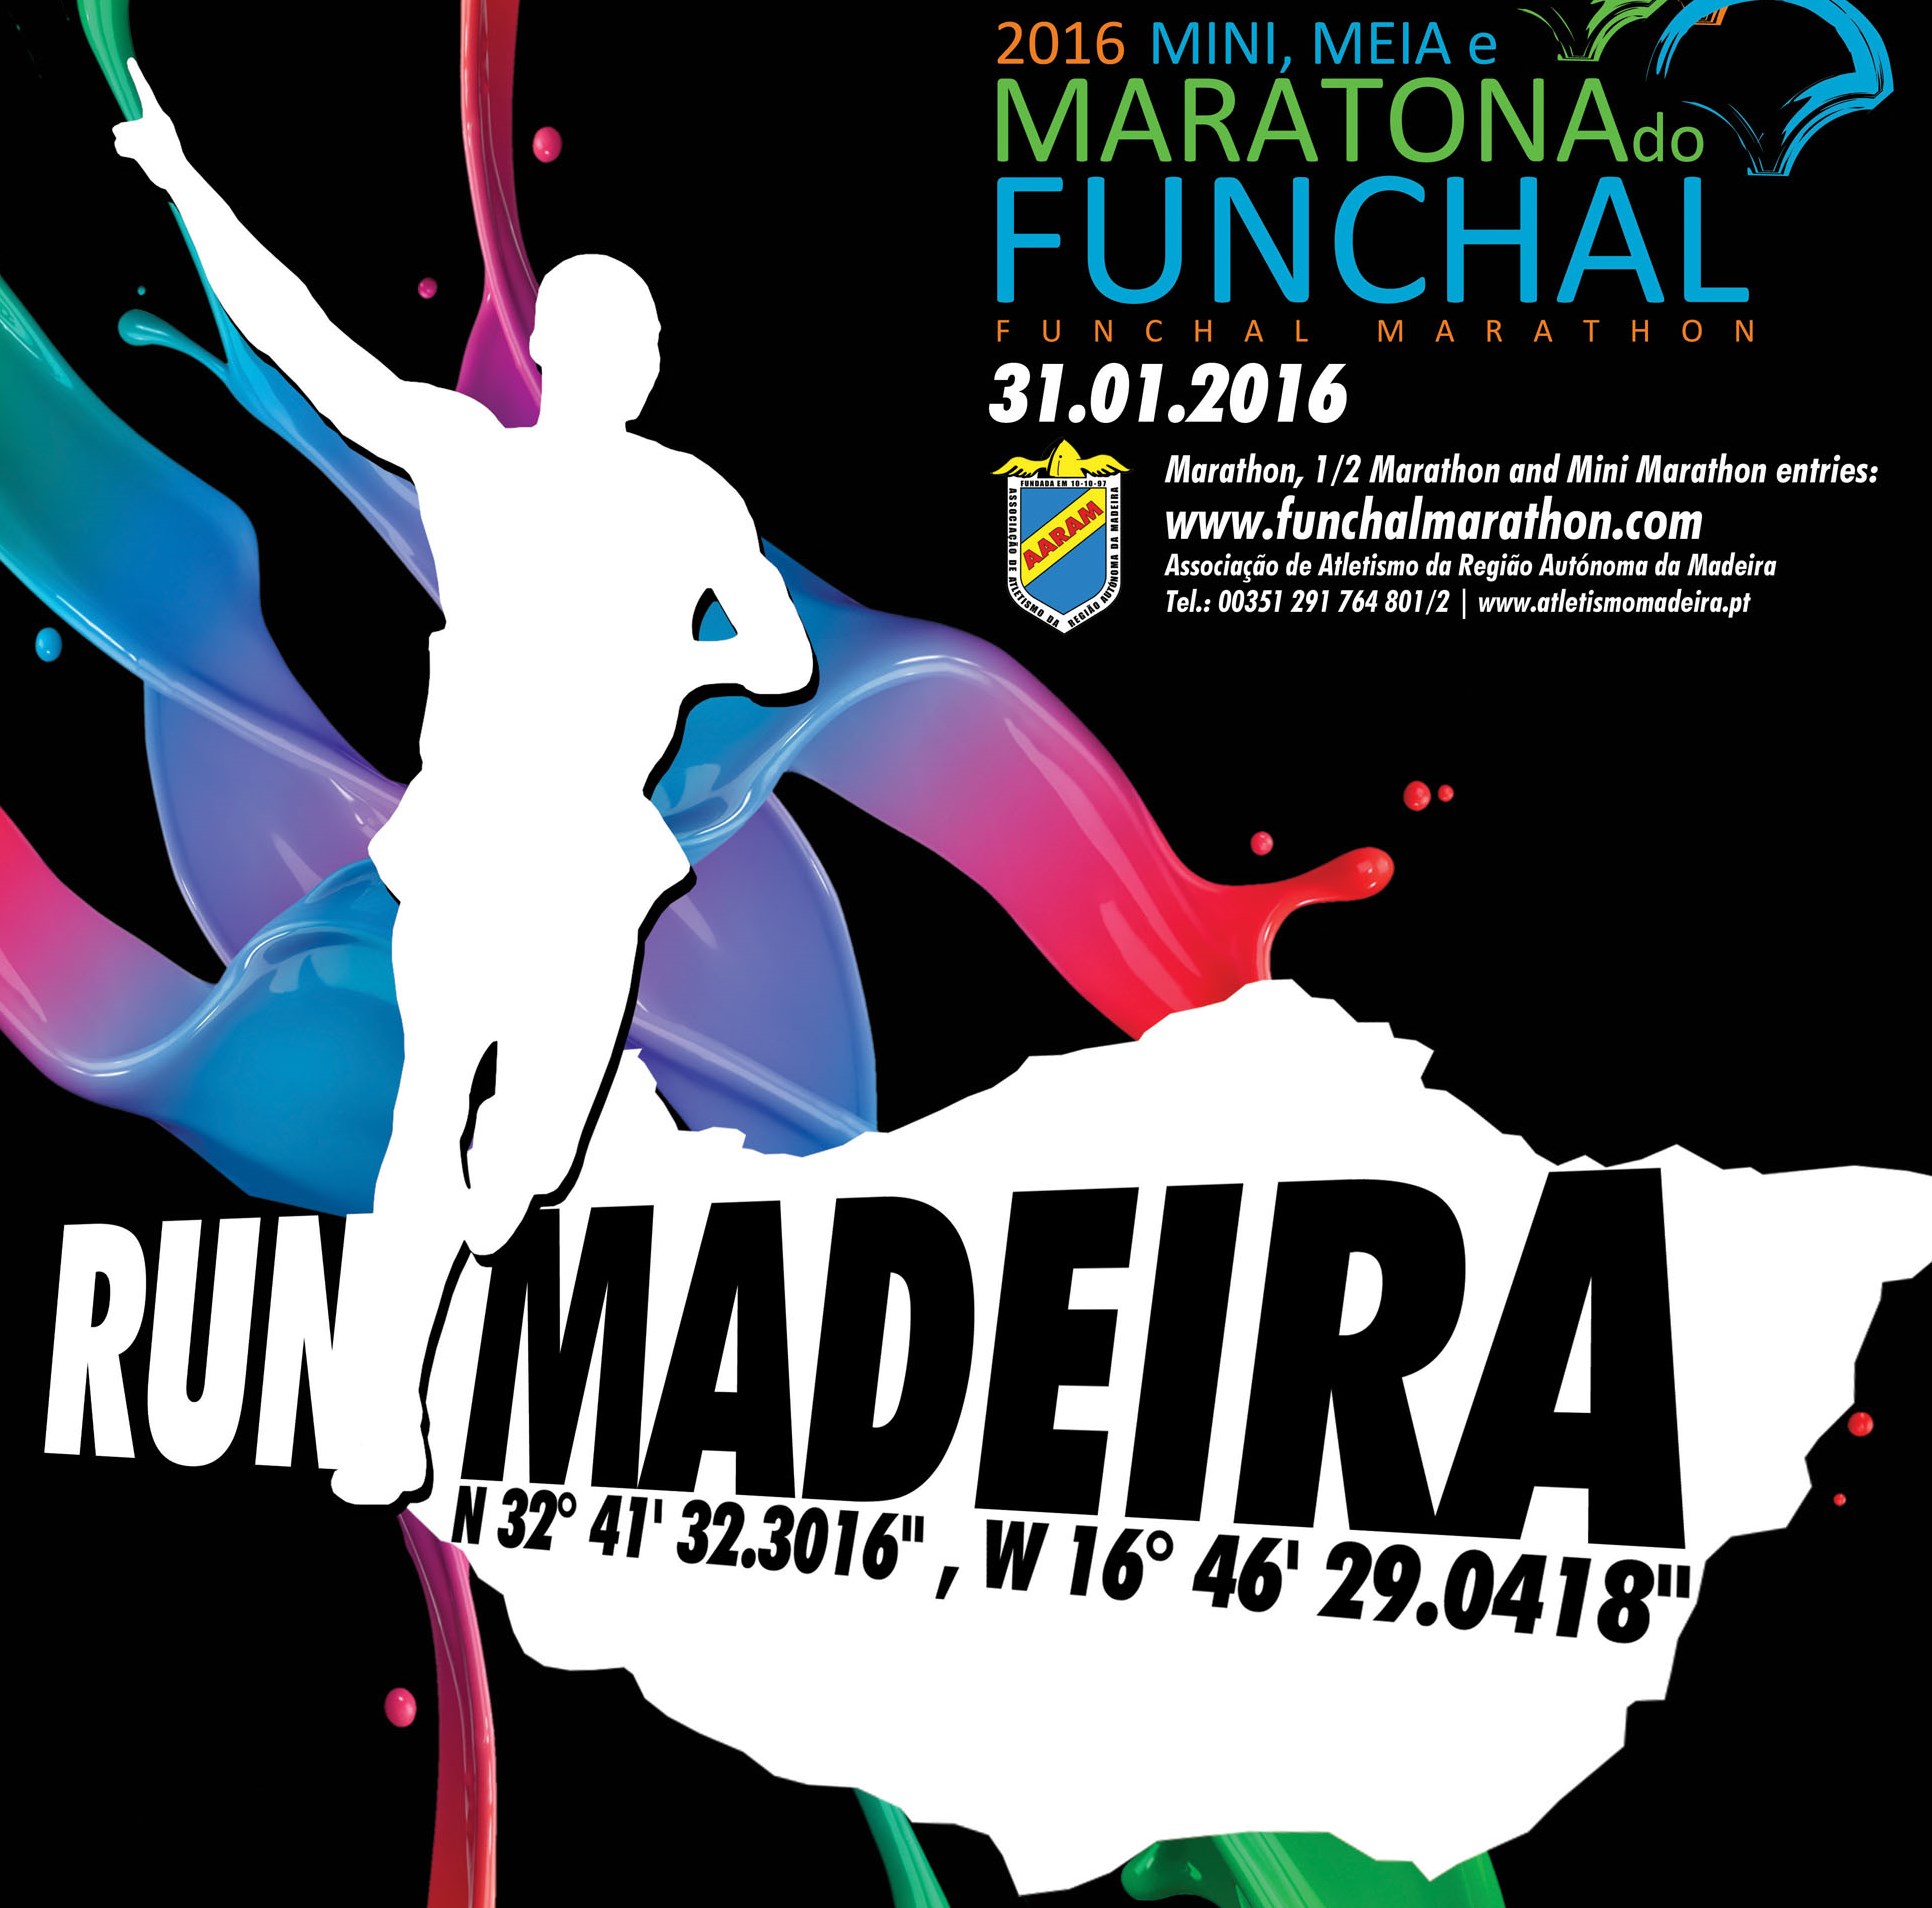 Atletismo - Maratona do Funchal 2016